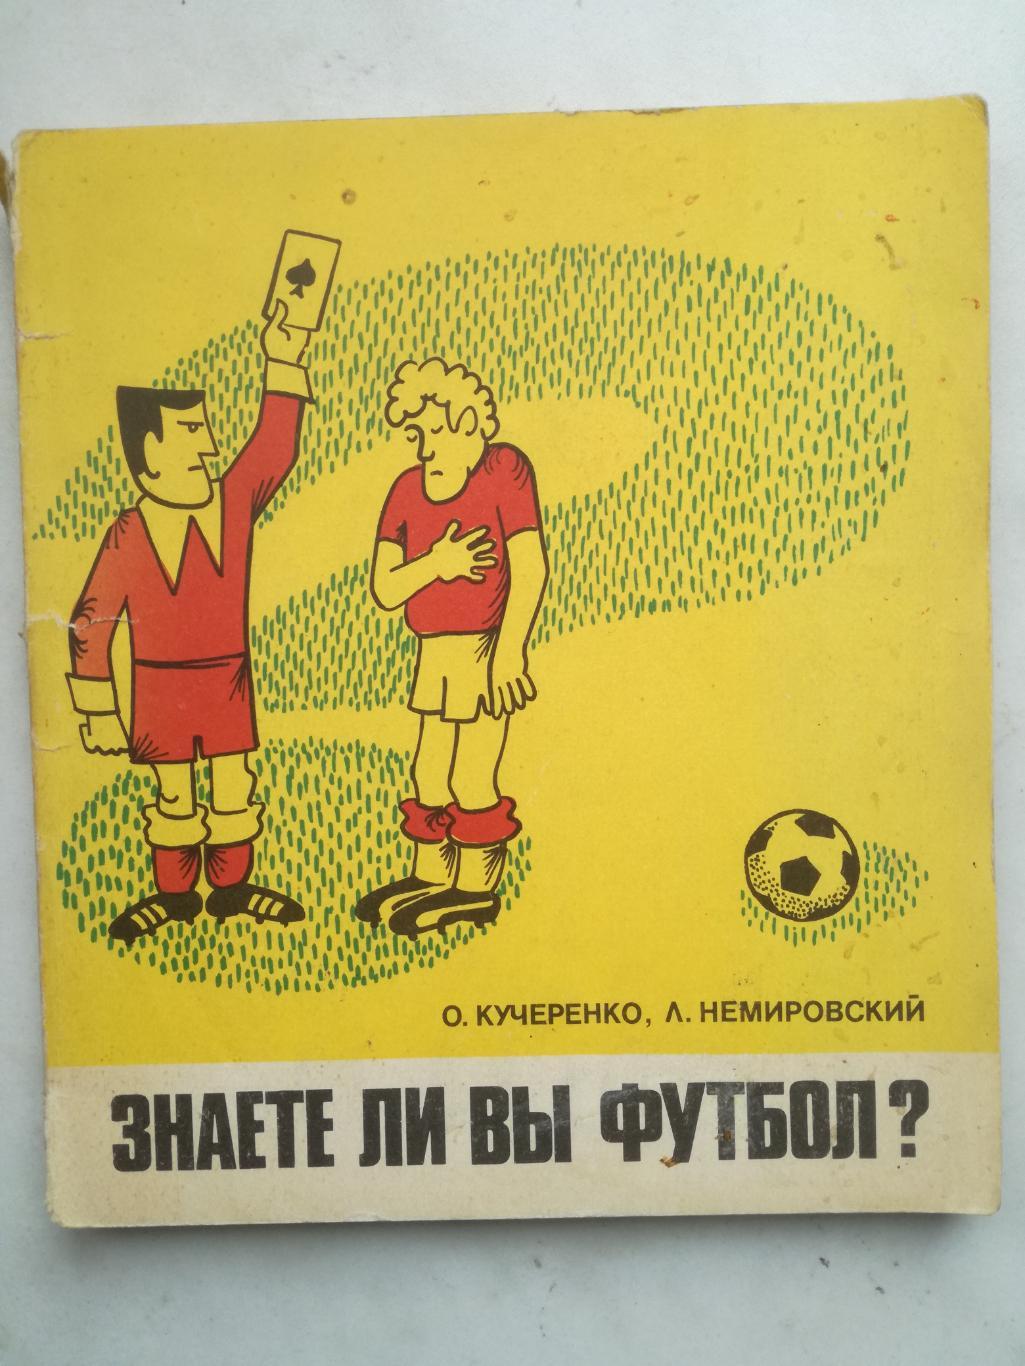 О.Кучеренко, Л.Немировский. Знаете ли вы футбол?